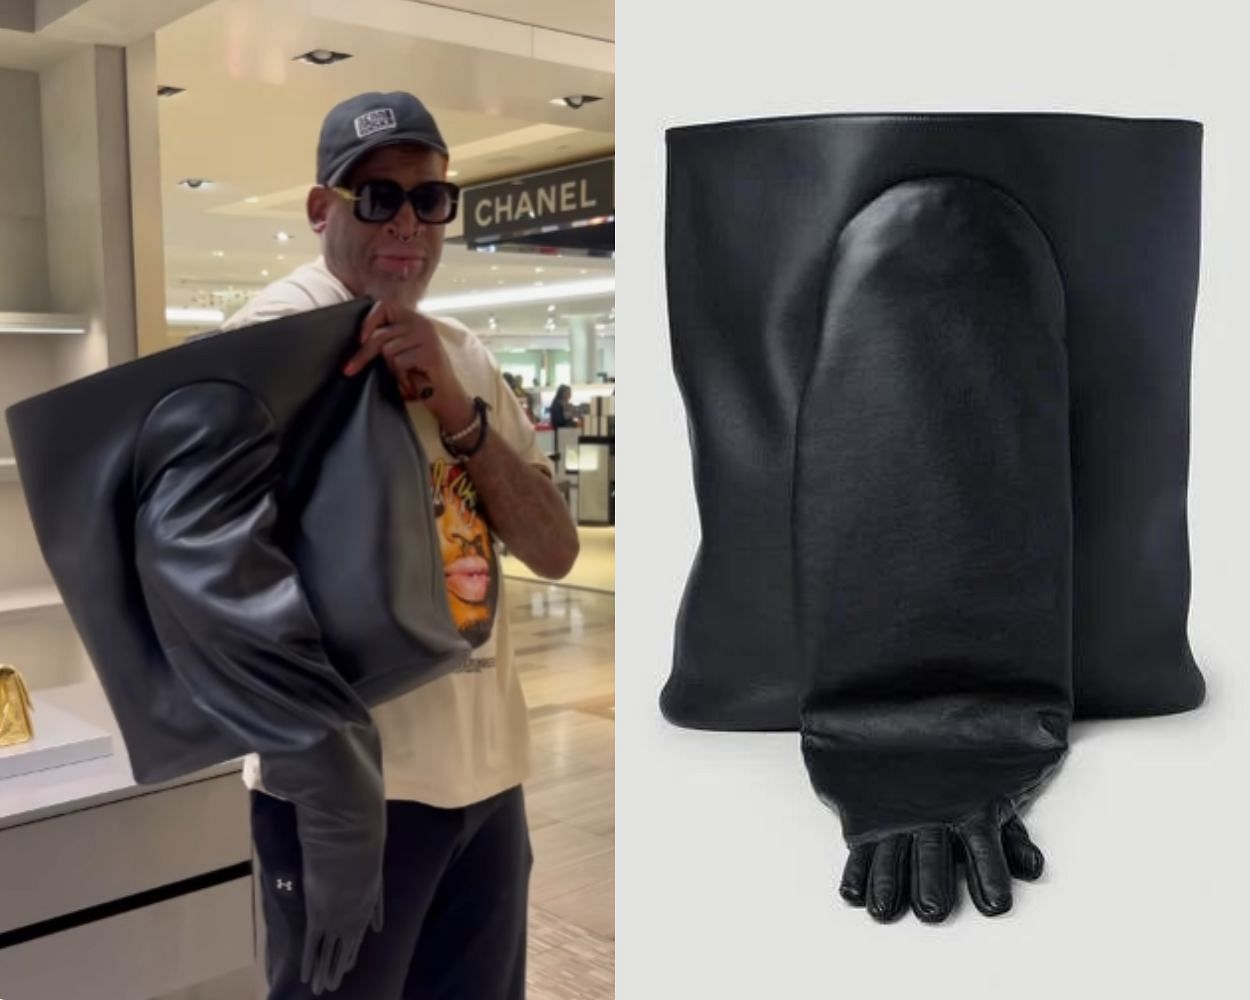 Dennis Rodman purchases an expensive Balenciaga bag